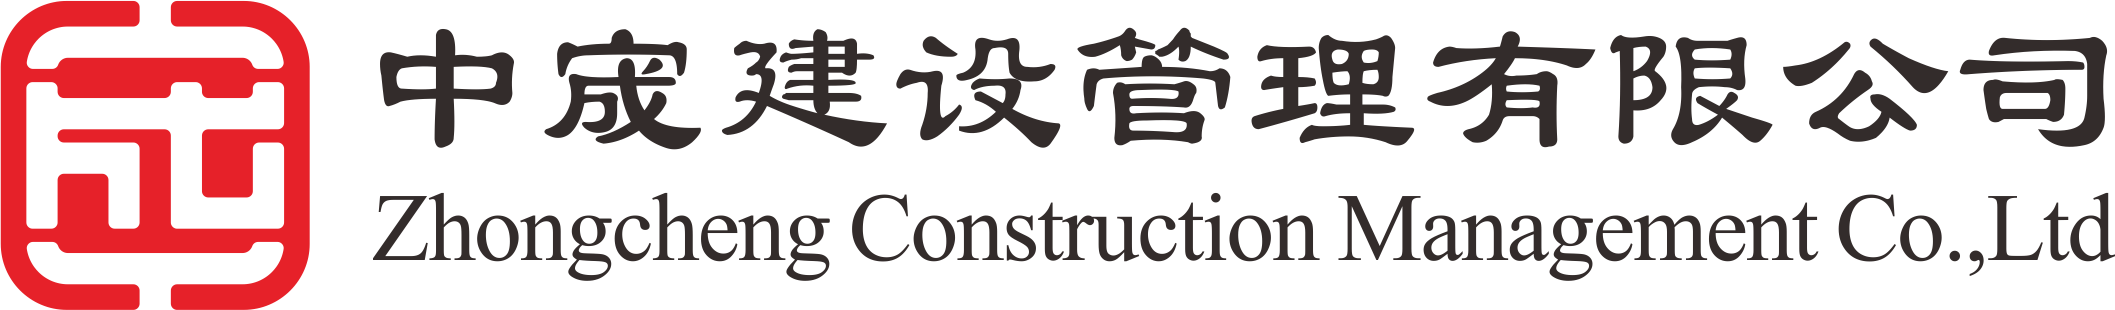 中宬建设管理有限公司